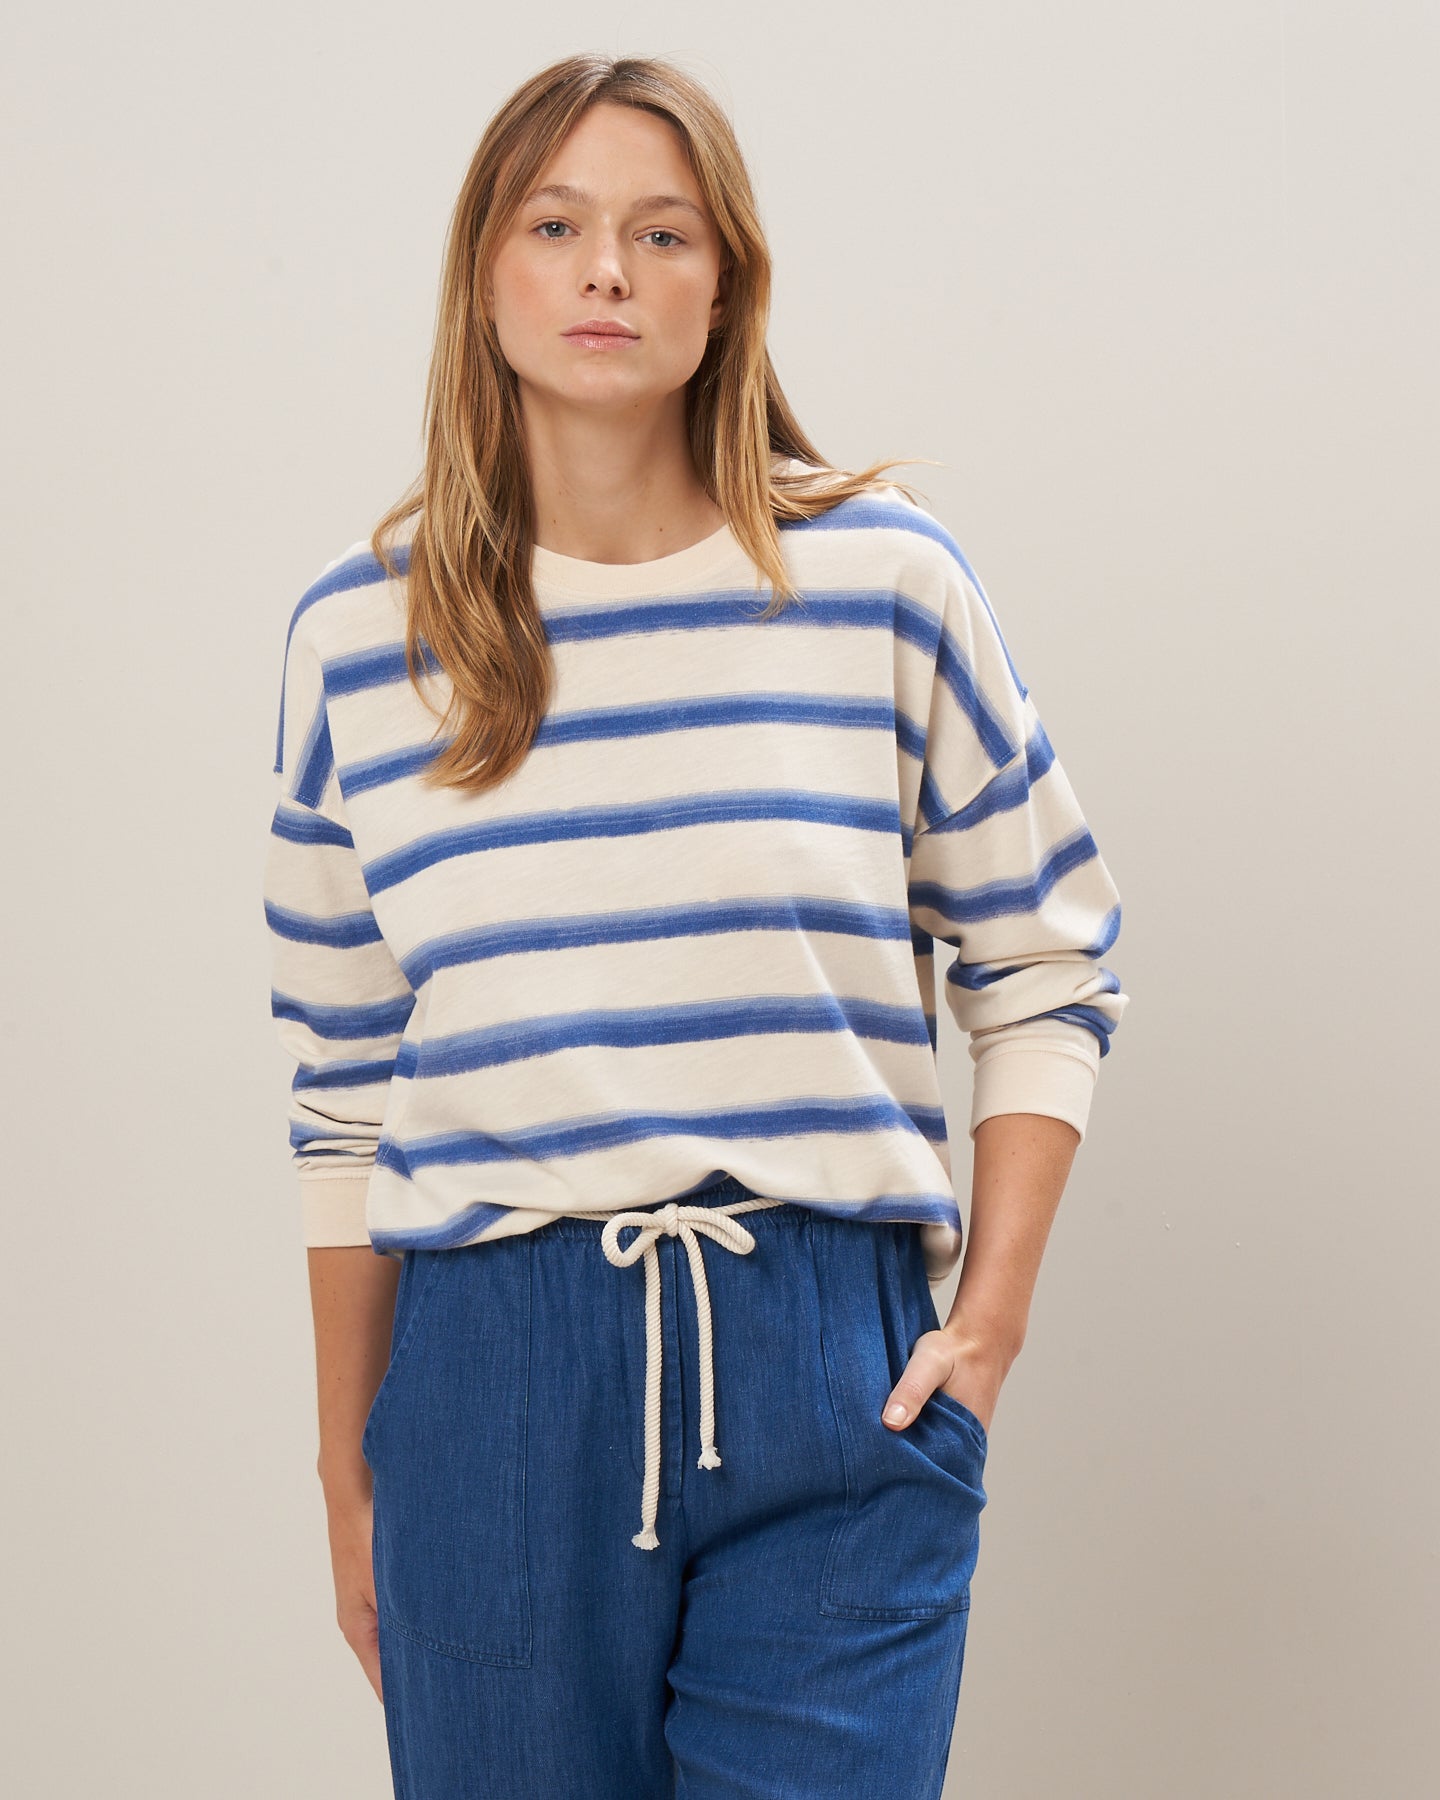 Sweatshirt Femme en éponge rayée Bleu Tayac BBUE514-01